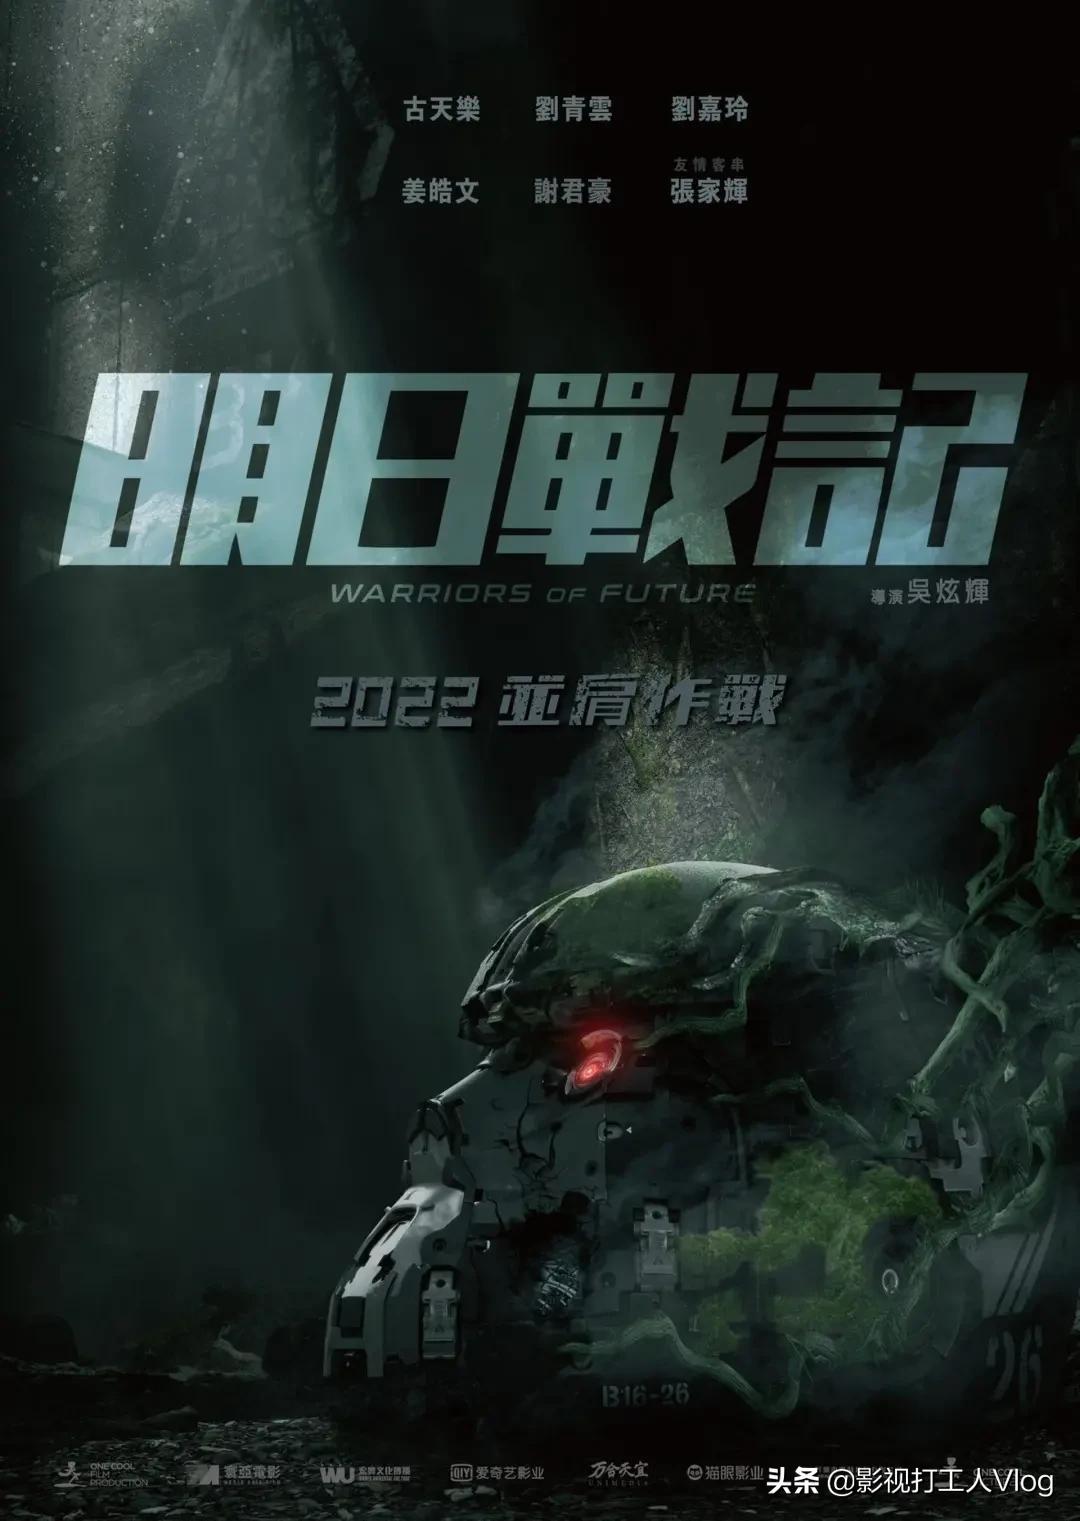 2022年可能上映的50部香港电影